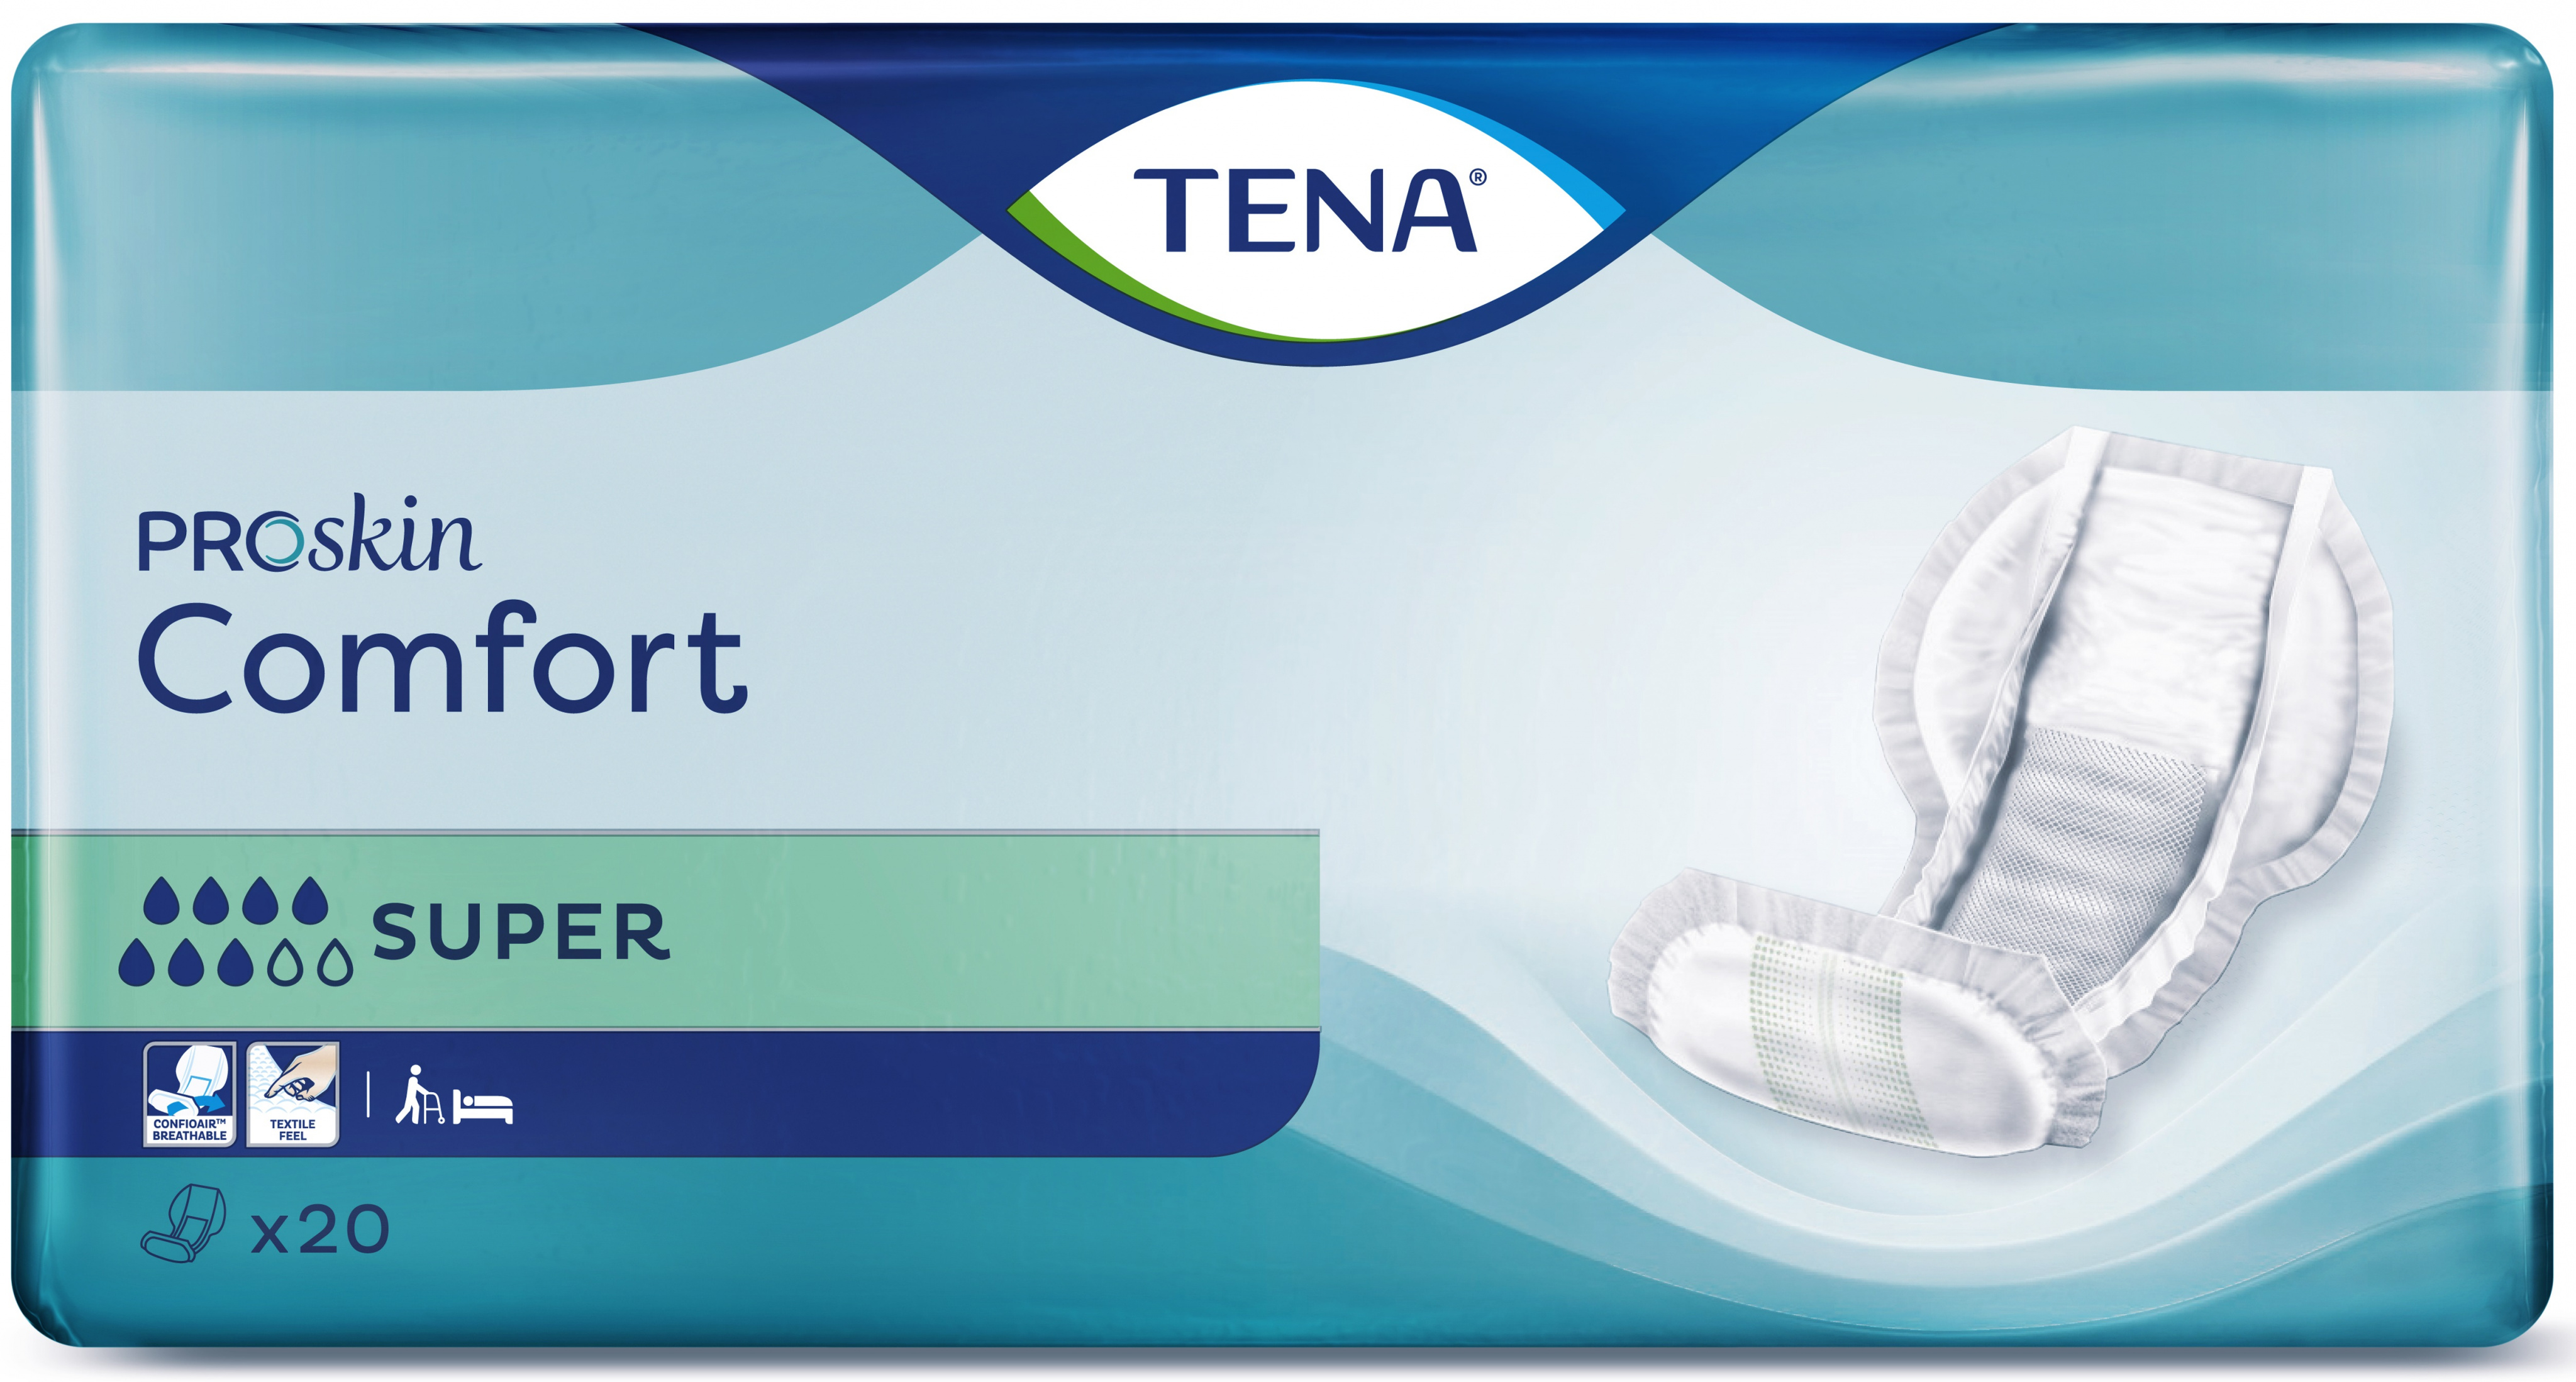 TENA ProSkin Comfort Super image 0